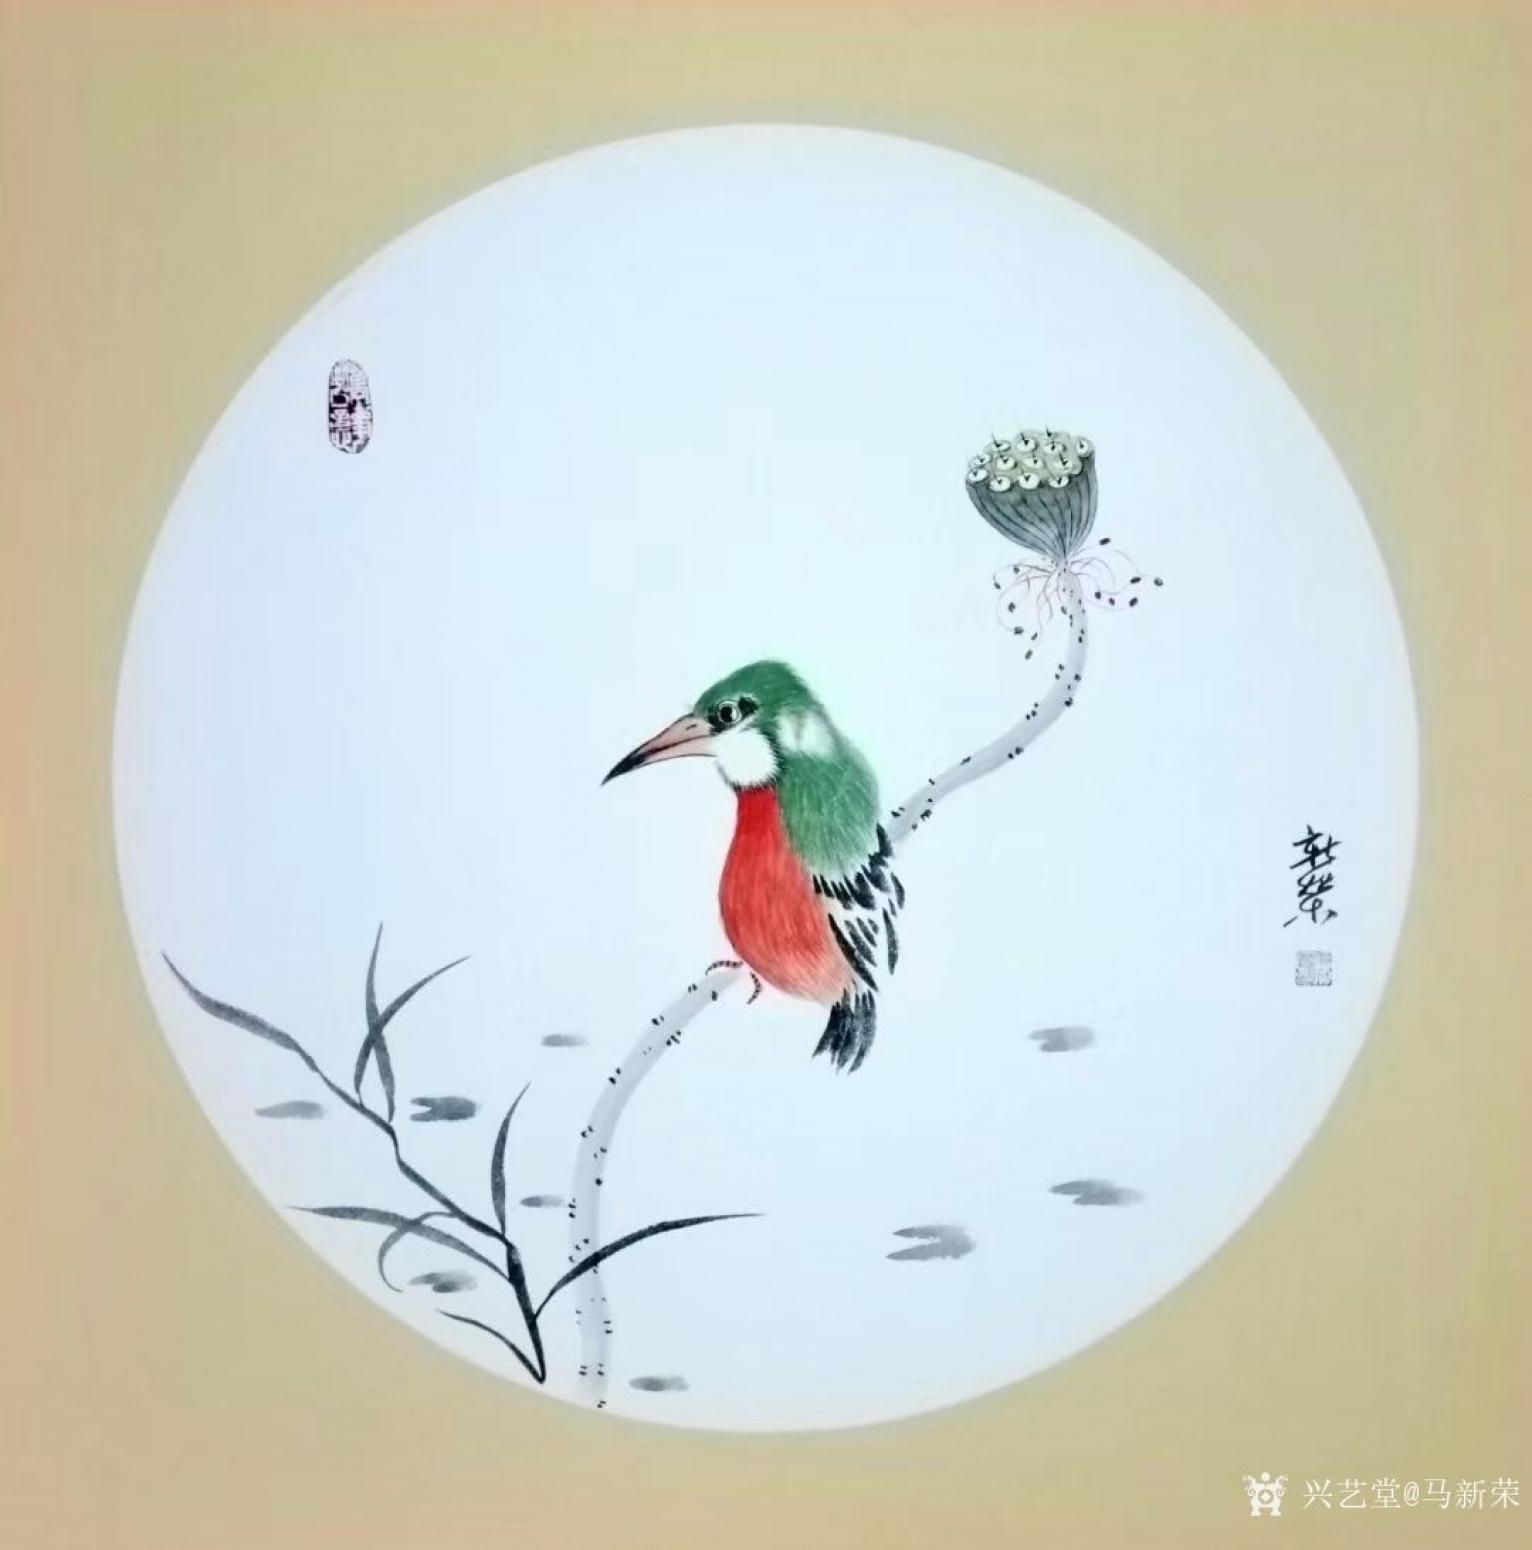 马新荣国画作品《翠鸟》